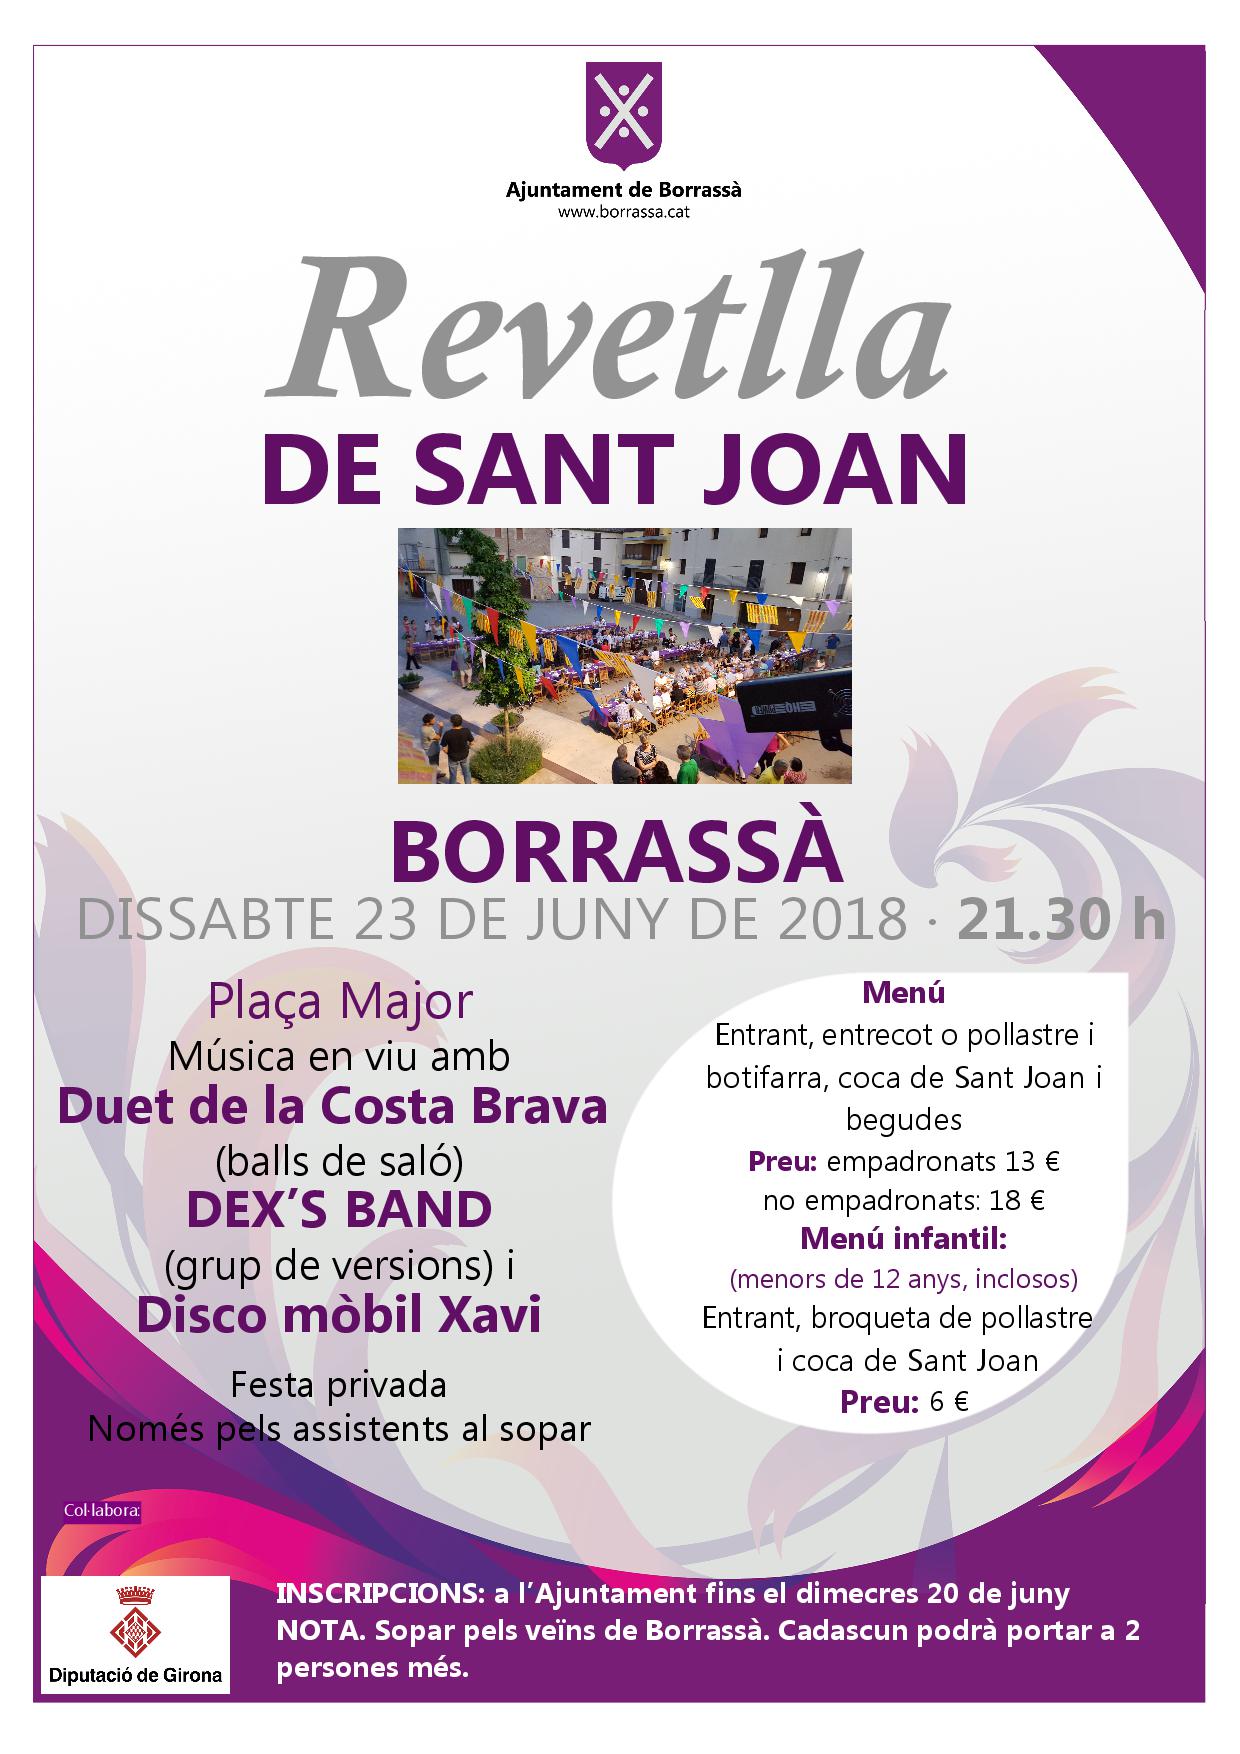 La Revetlla de Sant Joan es farà el dissabte, 23 de juny, a la plaça Major. A la festa hi haurà música en viu amb el Duet de la Costa Brava (balls de saló) i el grup de versions DEX'S BAND i hi haurà la Disco Mòbil Xavi. 